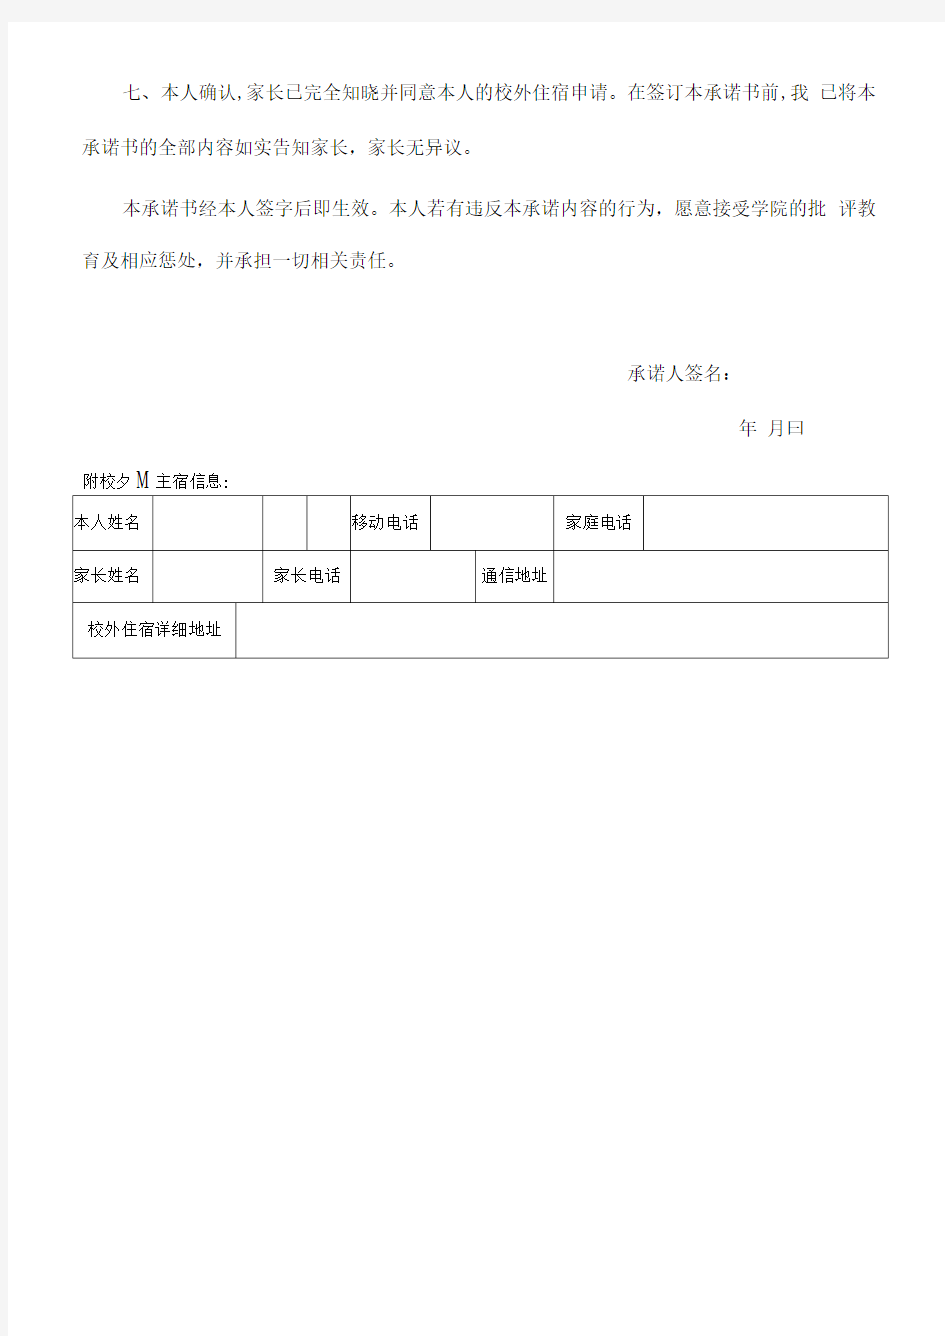 江阴职业技术学院学生校外住宿安全承诺书